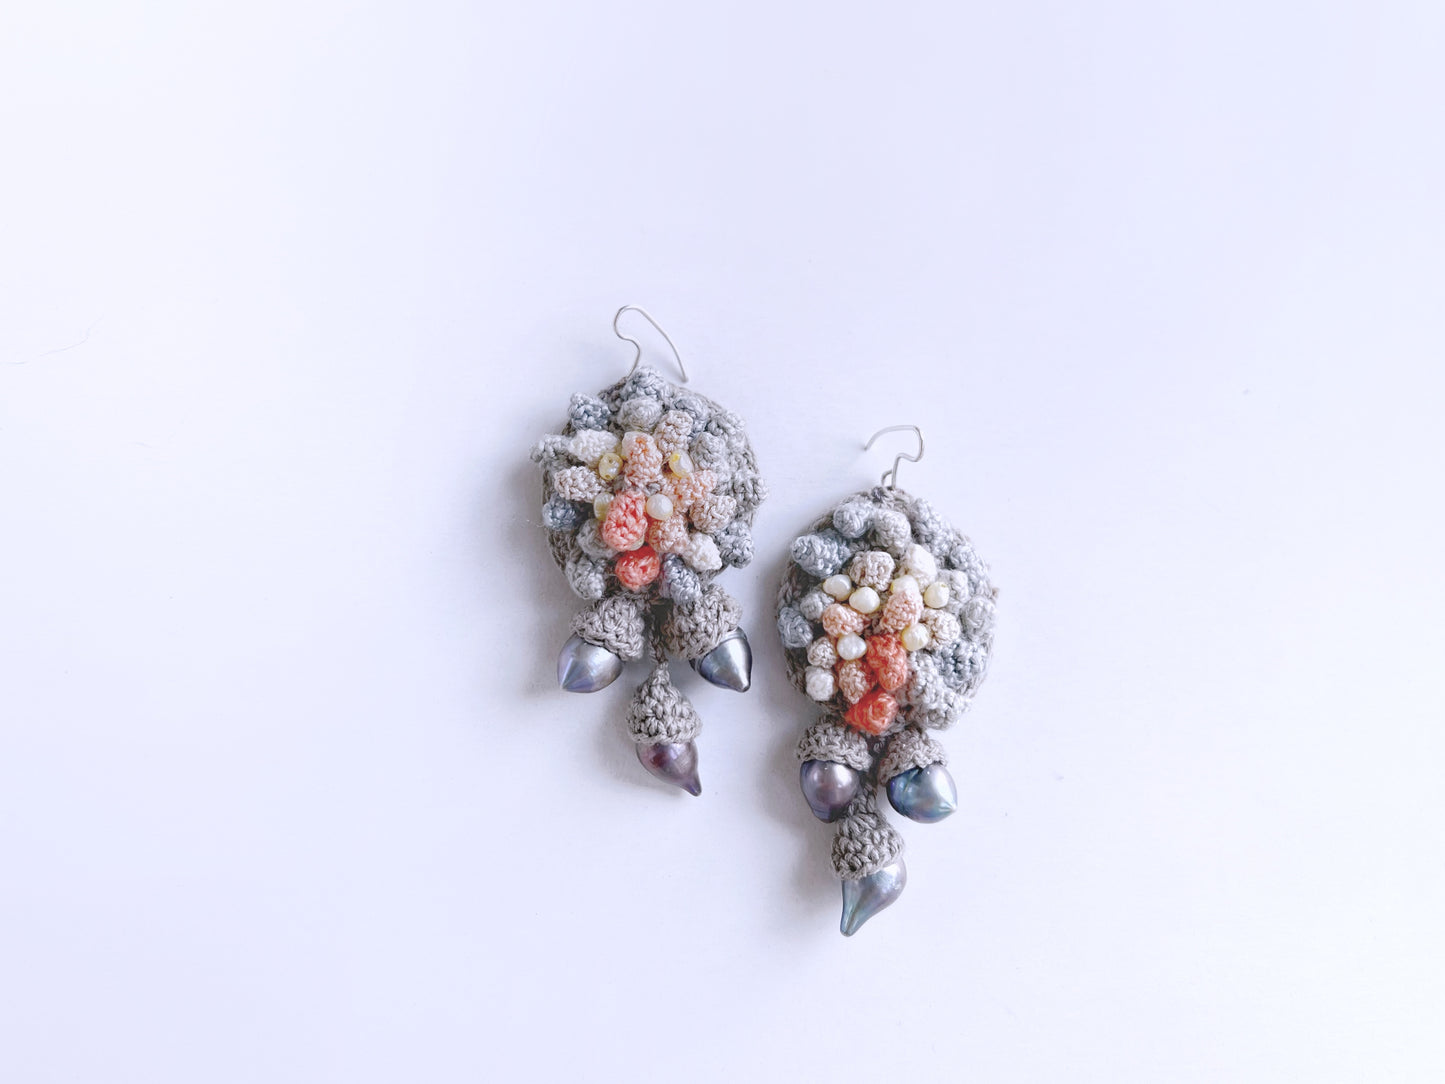 Anegada earrings